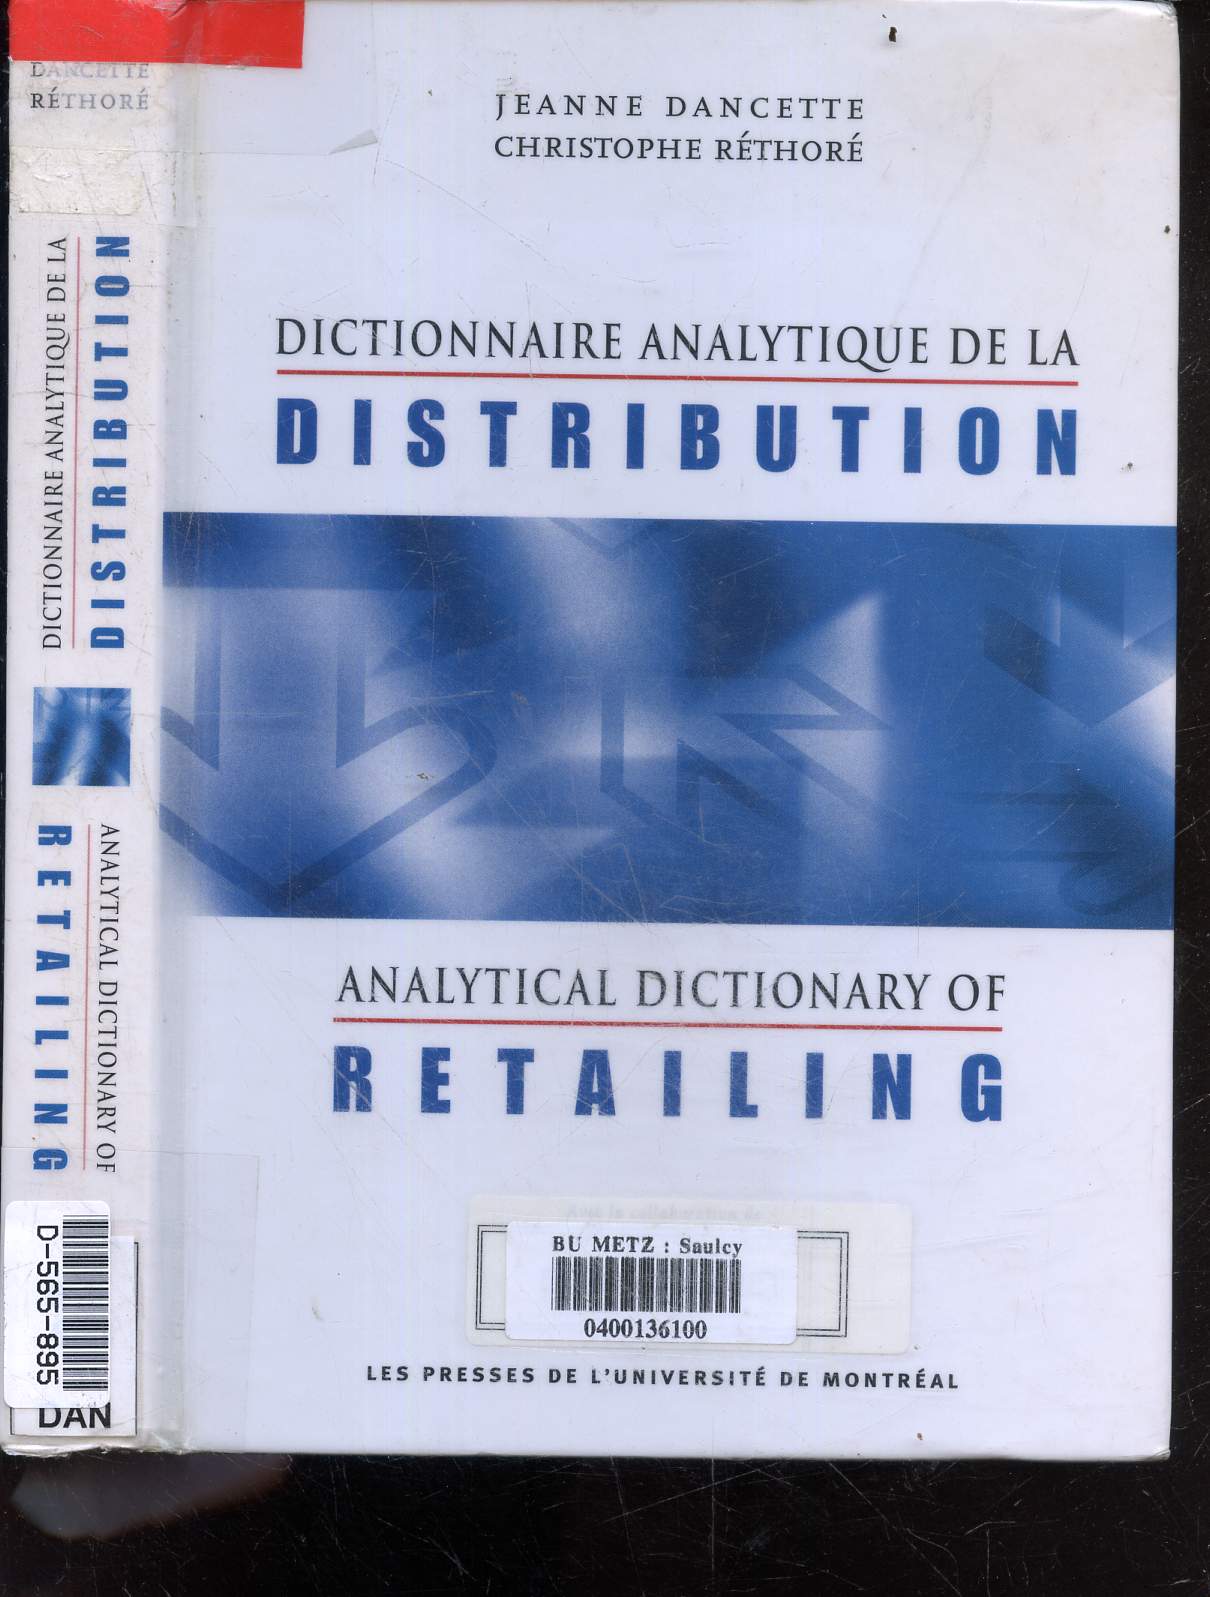 Dictionnaire analytique de la distribution - analytical dictionary of retailing - 350 notions de base du domaine de la distribution - plus de 3500 termes anglais et autant de termes francais ...